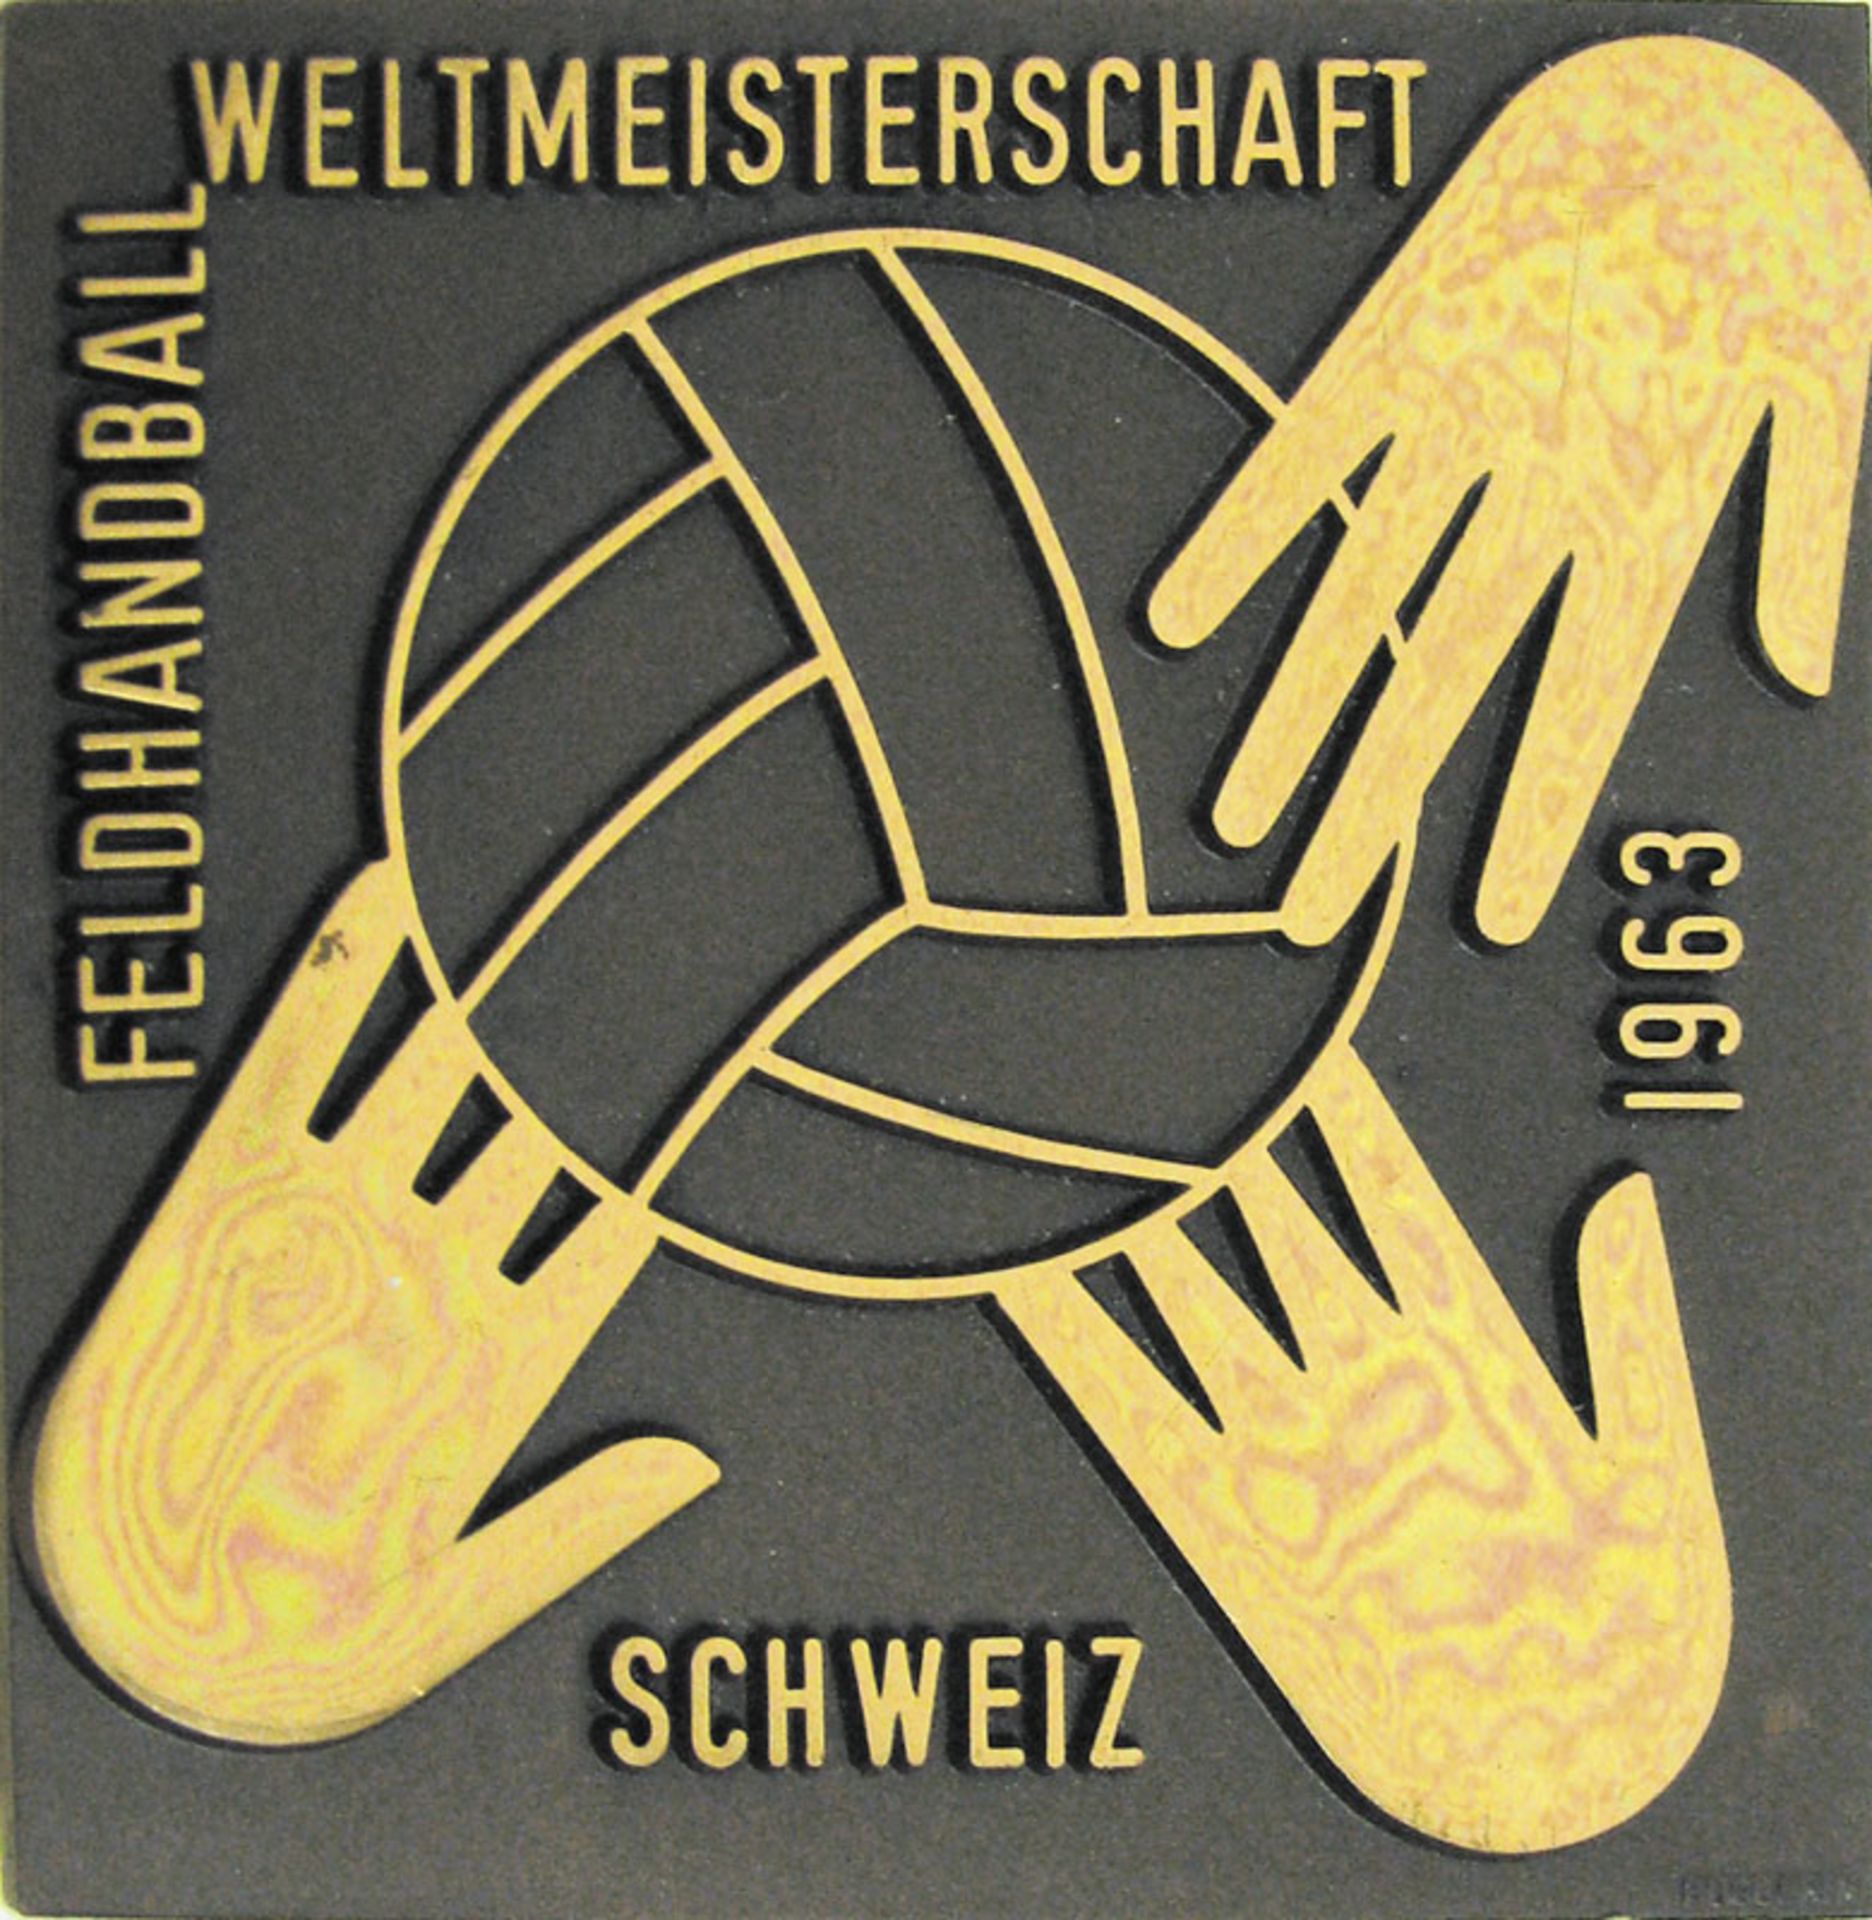 Handball World Championships 1963. Medal - "Feldhandball-Weltmeisterschaft Schweiz 1963". Bronze, go